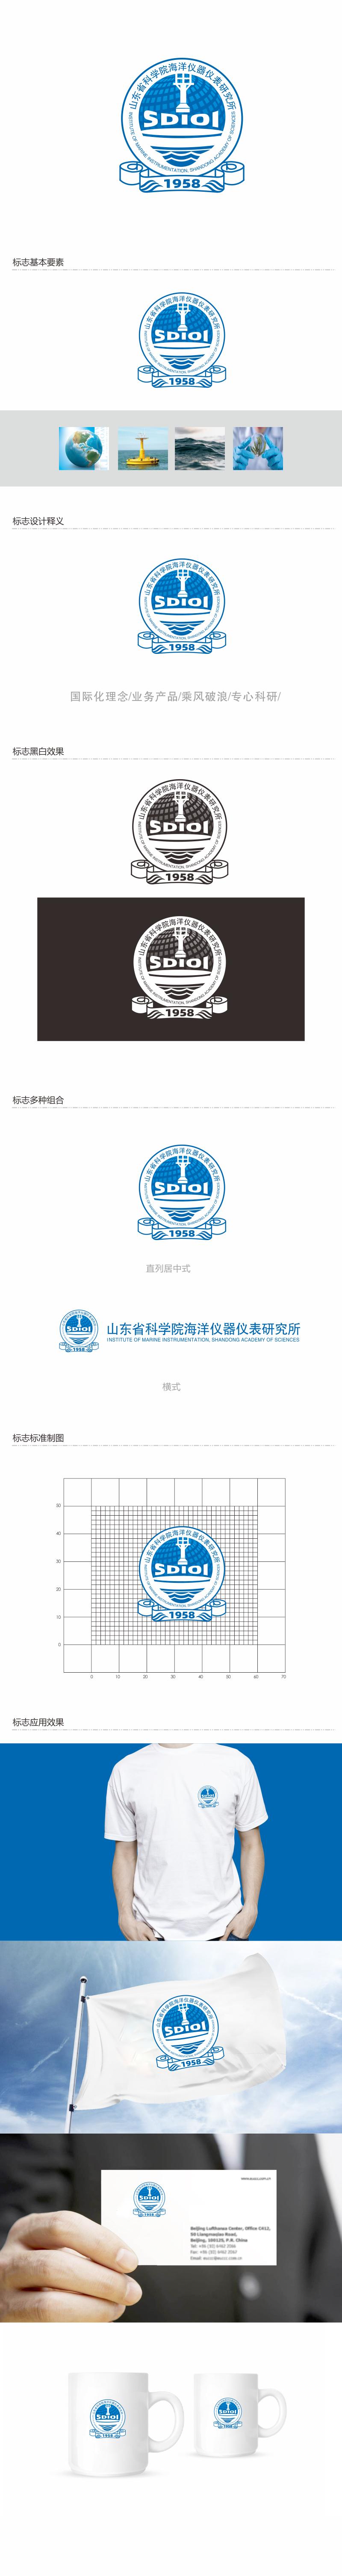 山东省科学院海洋仪器仪表研究所科研品牌LOGO设计图0